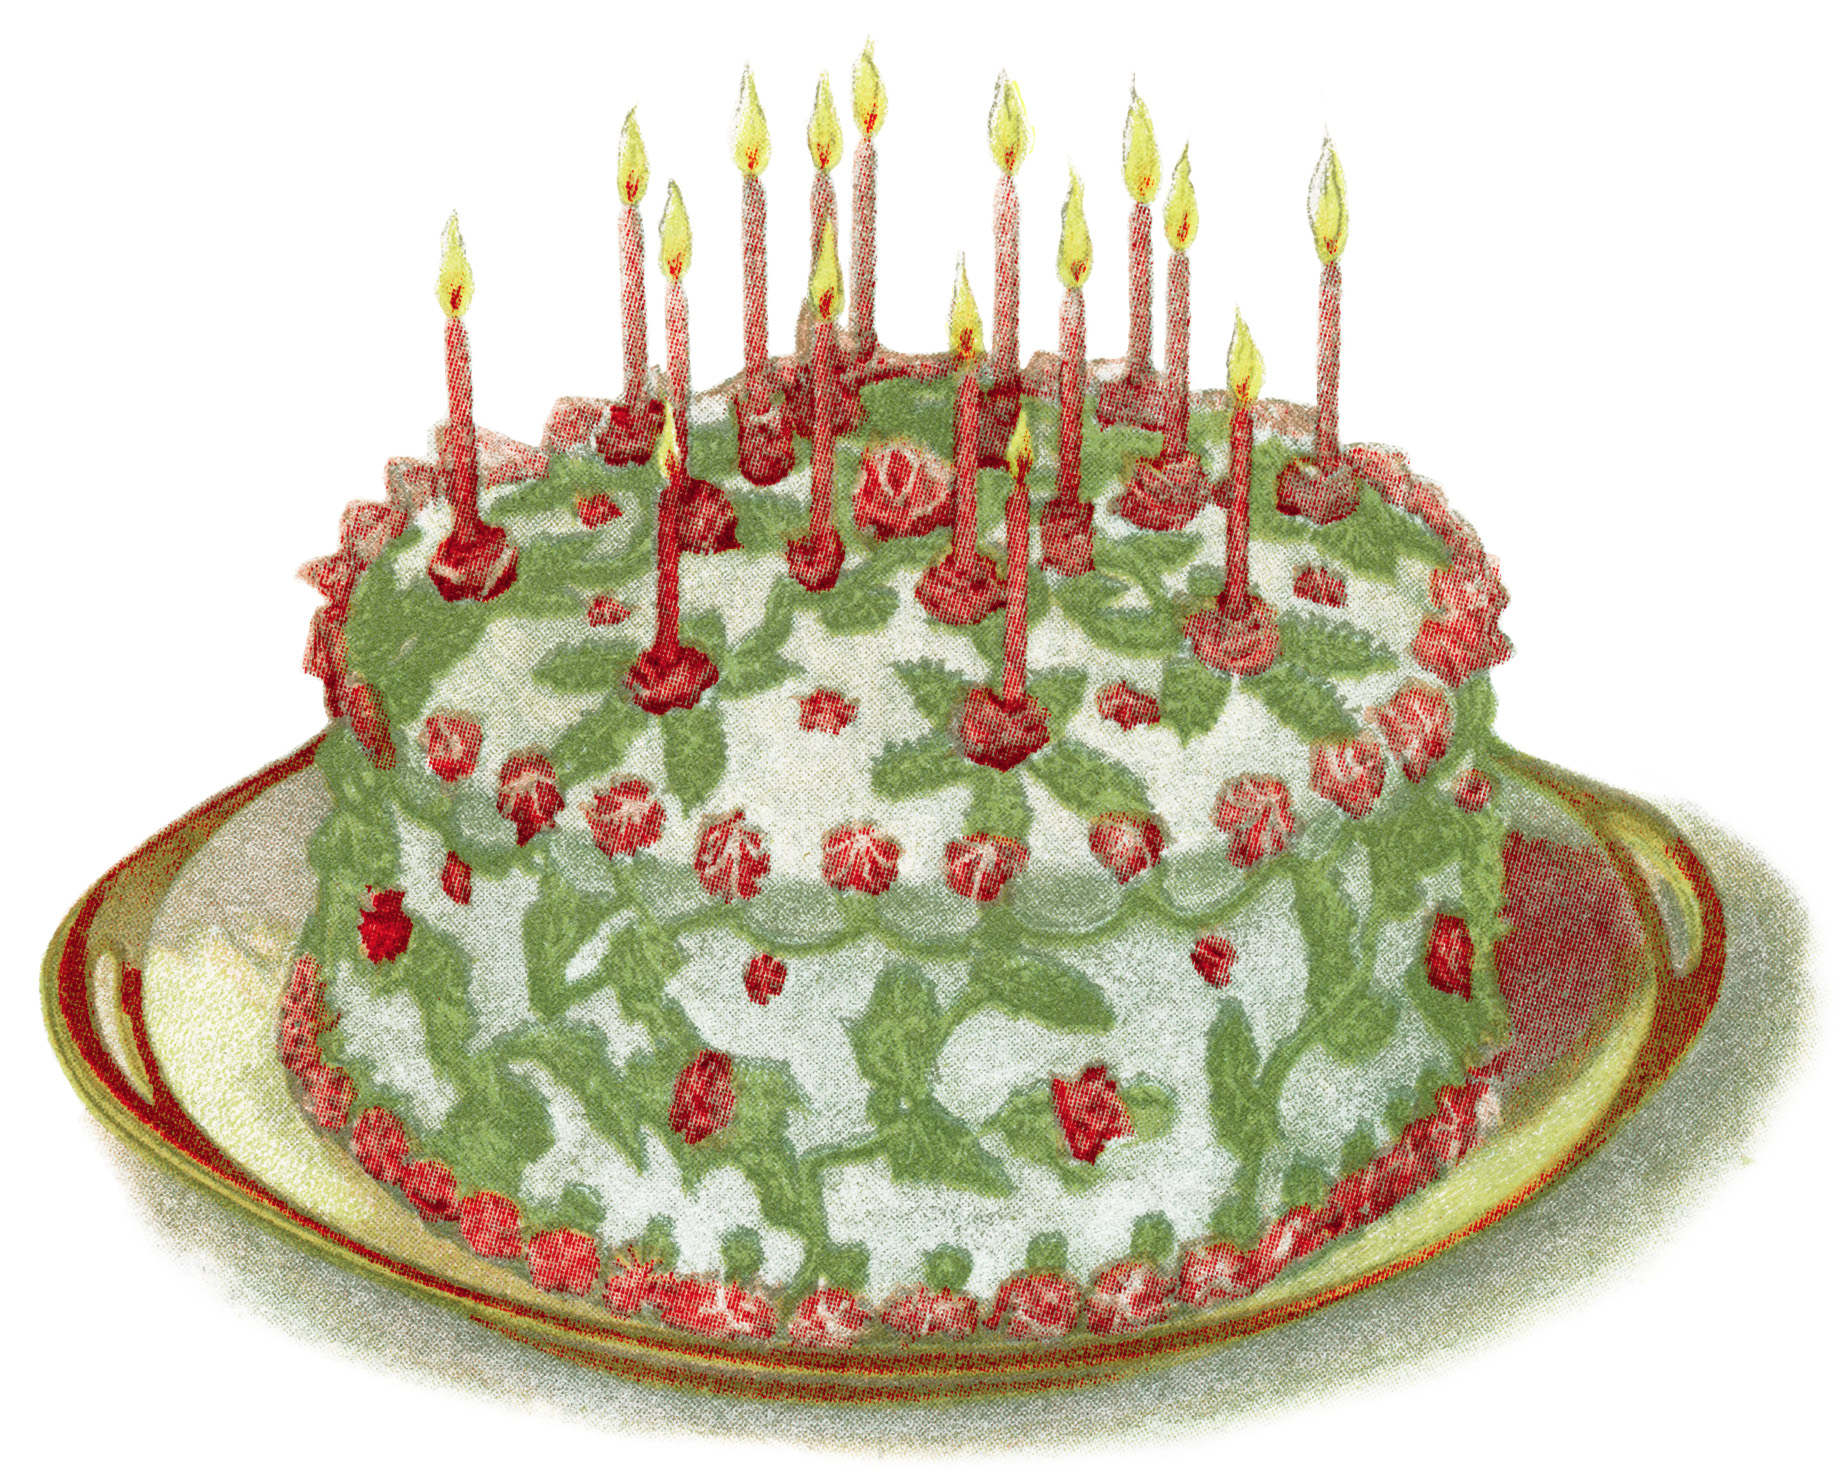 vintage cake clip art, birthday cake illustration, vintage baking clip art, frosting icing recipe, antique cookbook page, junk journal printable